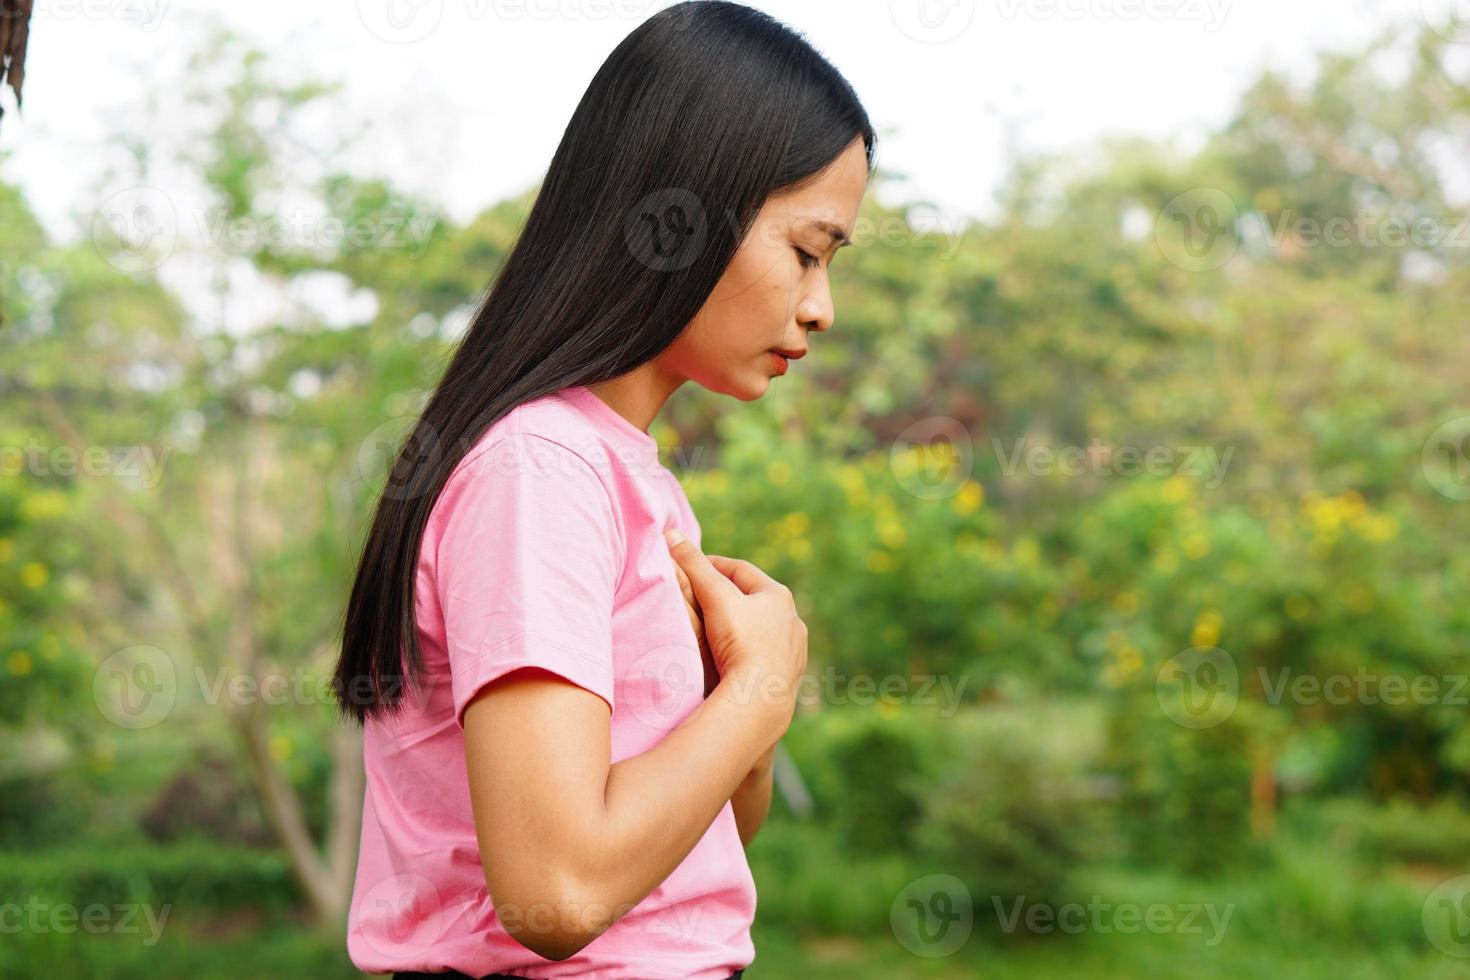 asiatische frauen haben brustenge. durch Herzerkrankungen verursacht foto